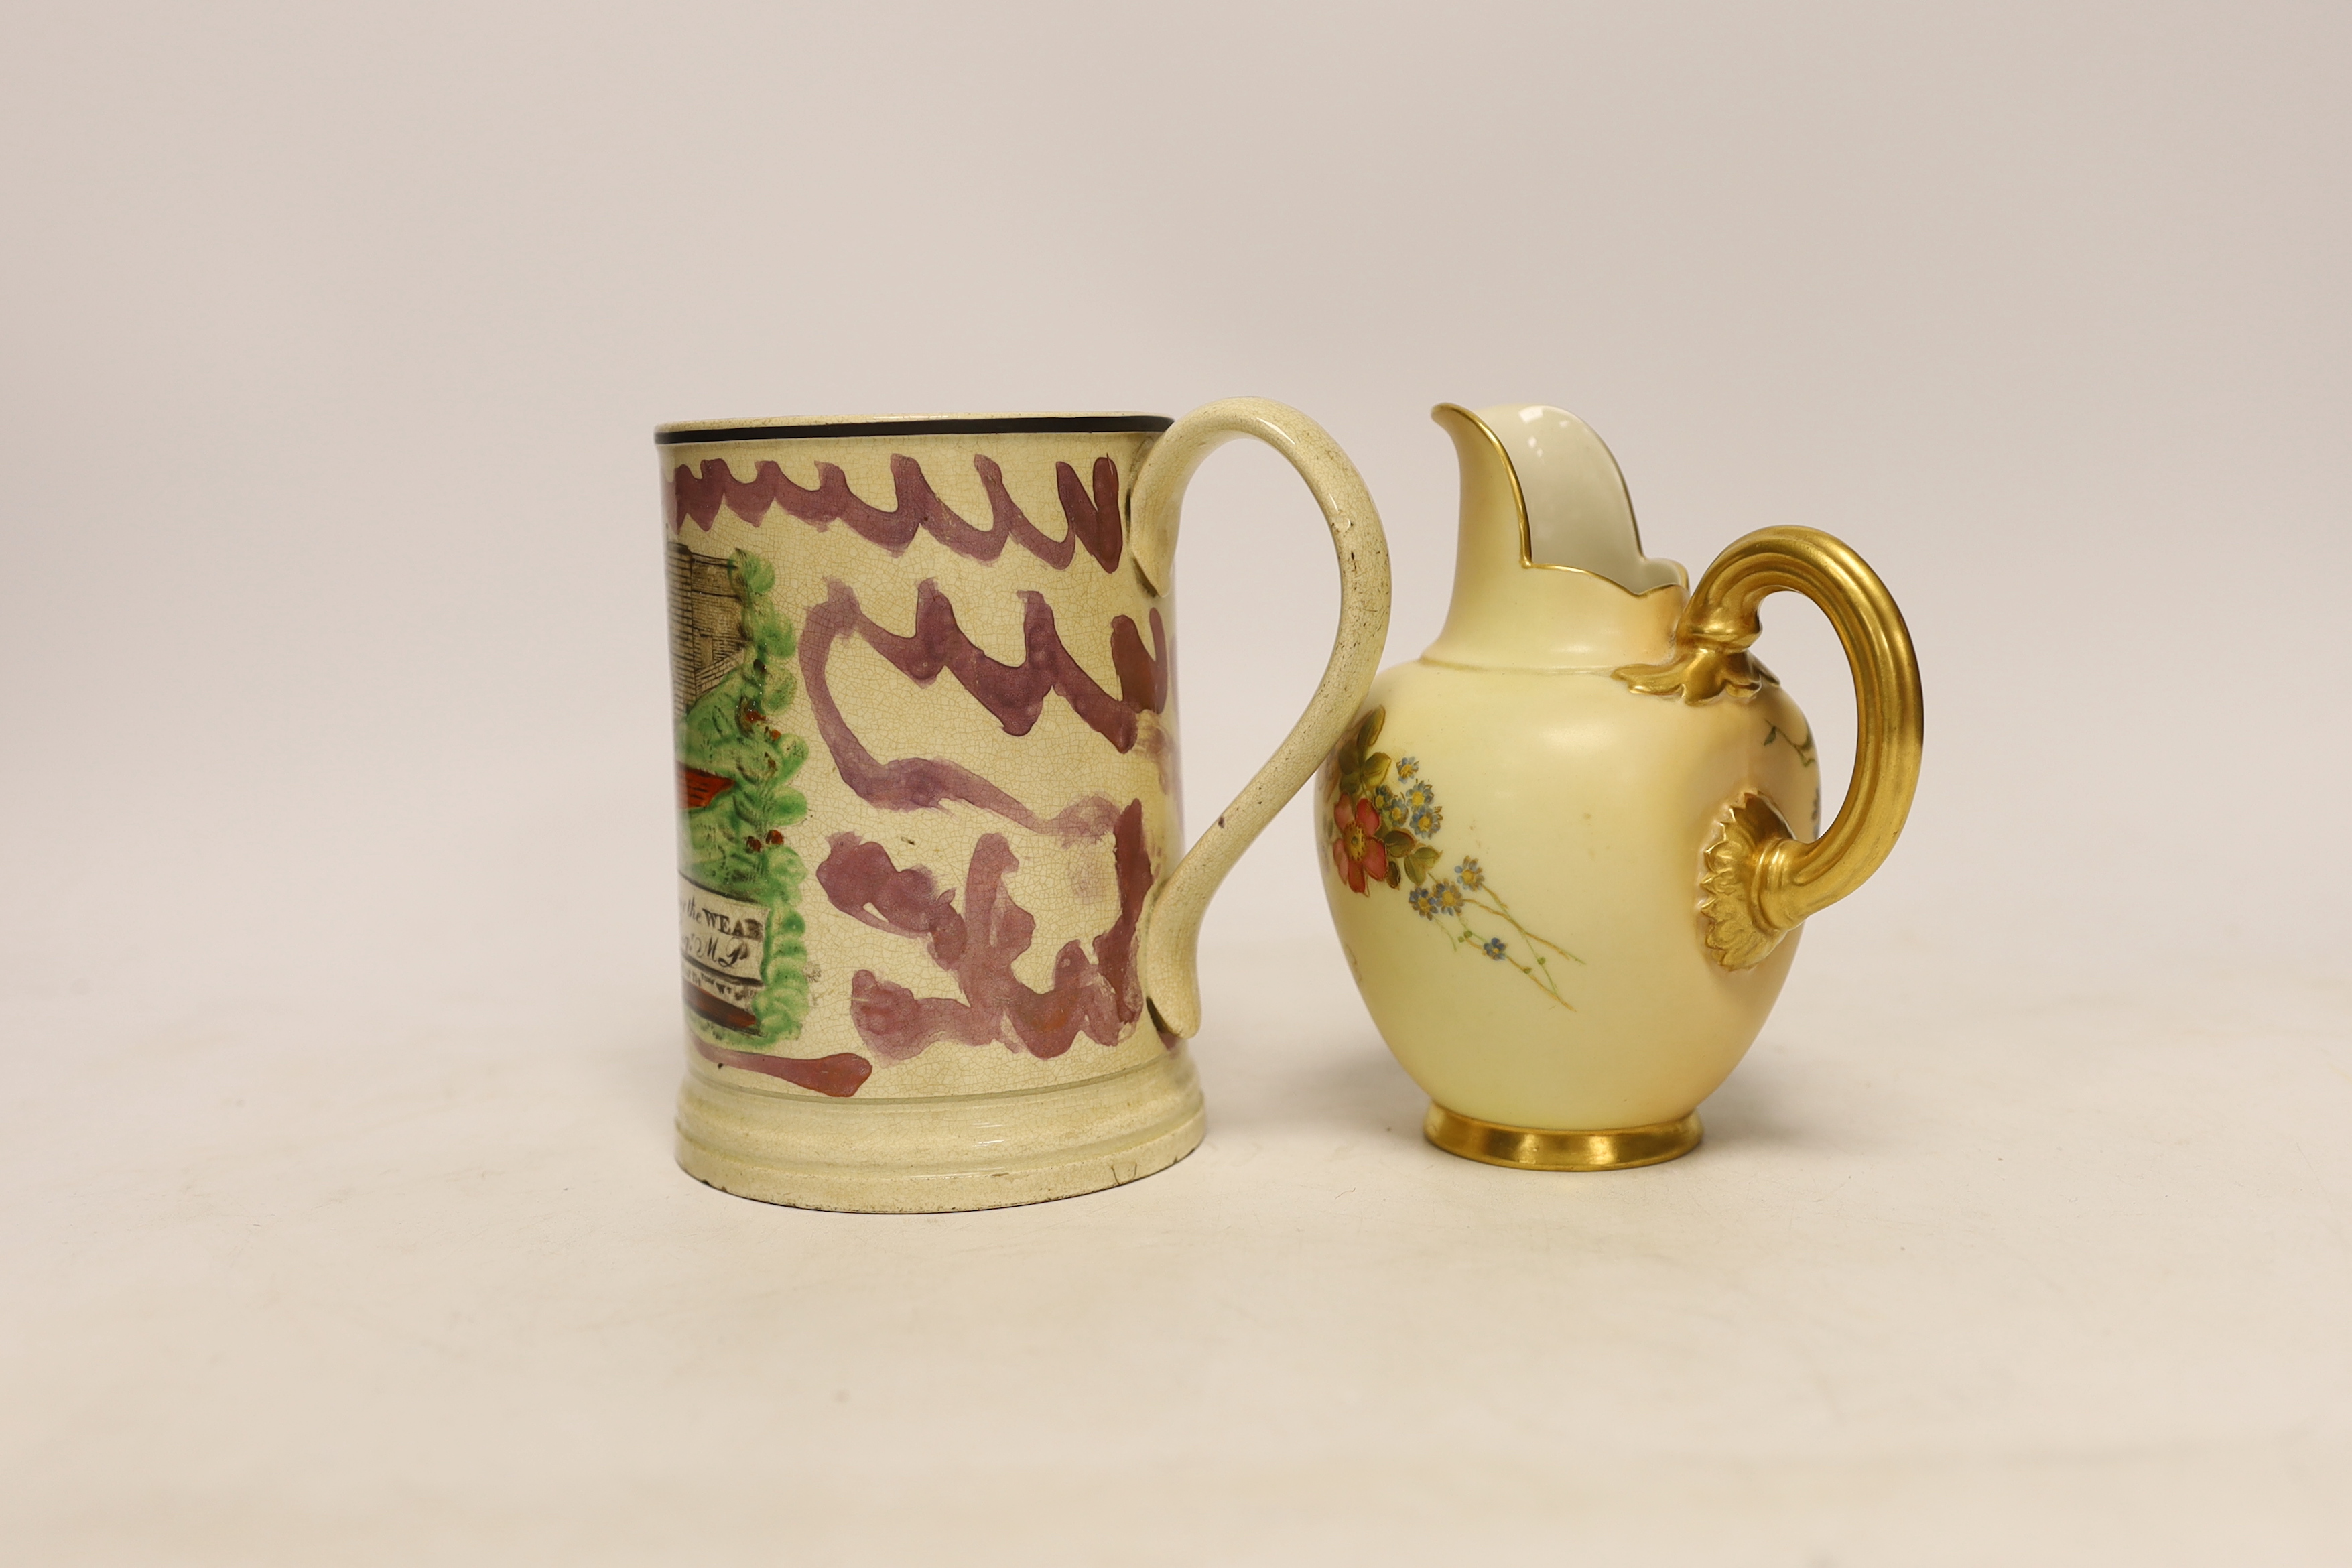 A Sunderland pink lustre pottery frog mug and a Royal Worcester jug, largest 13cm high (2)